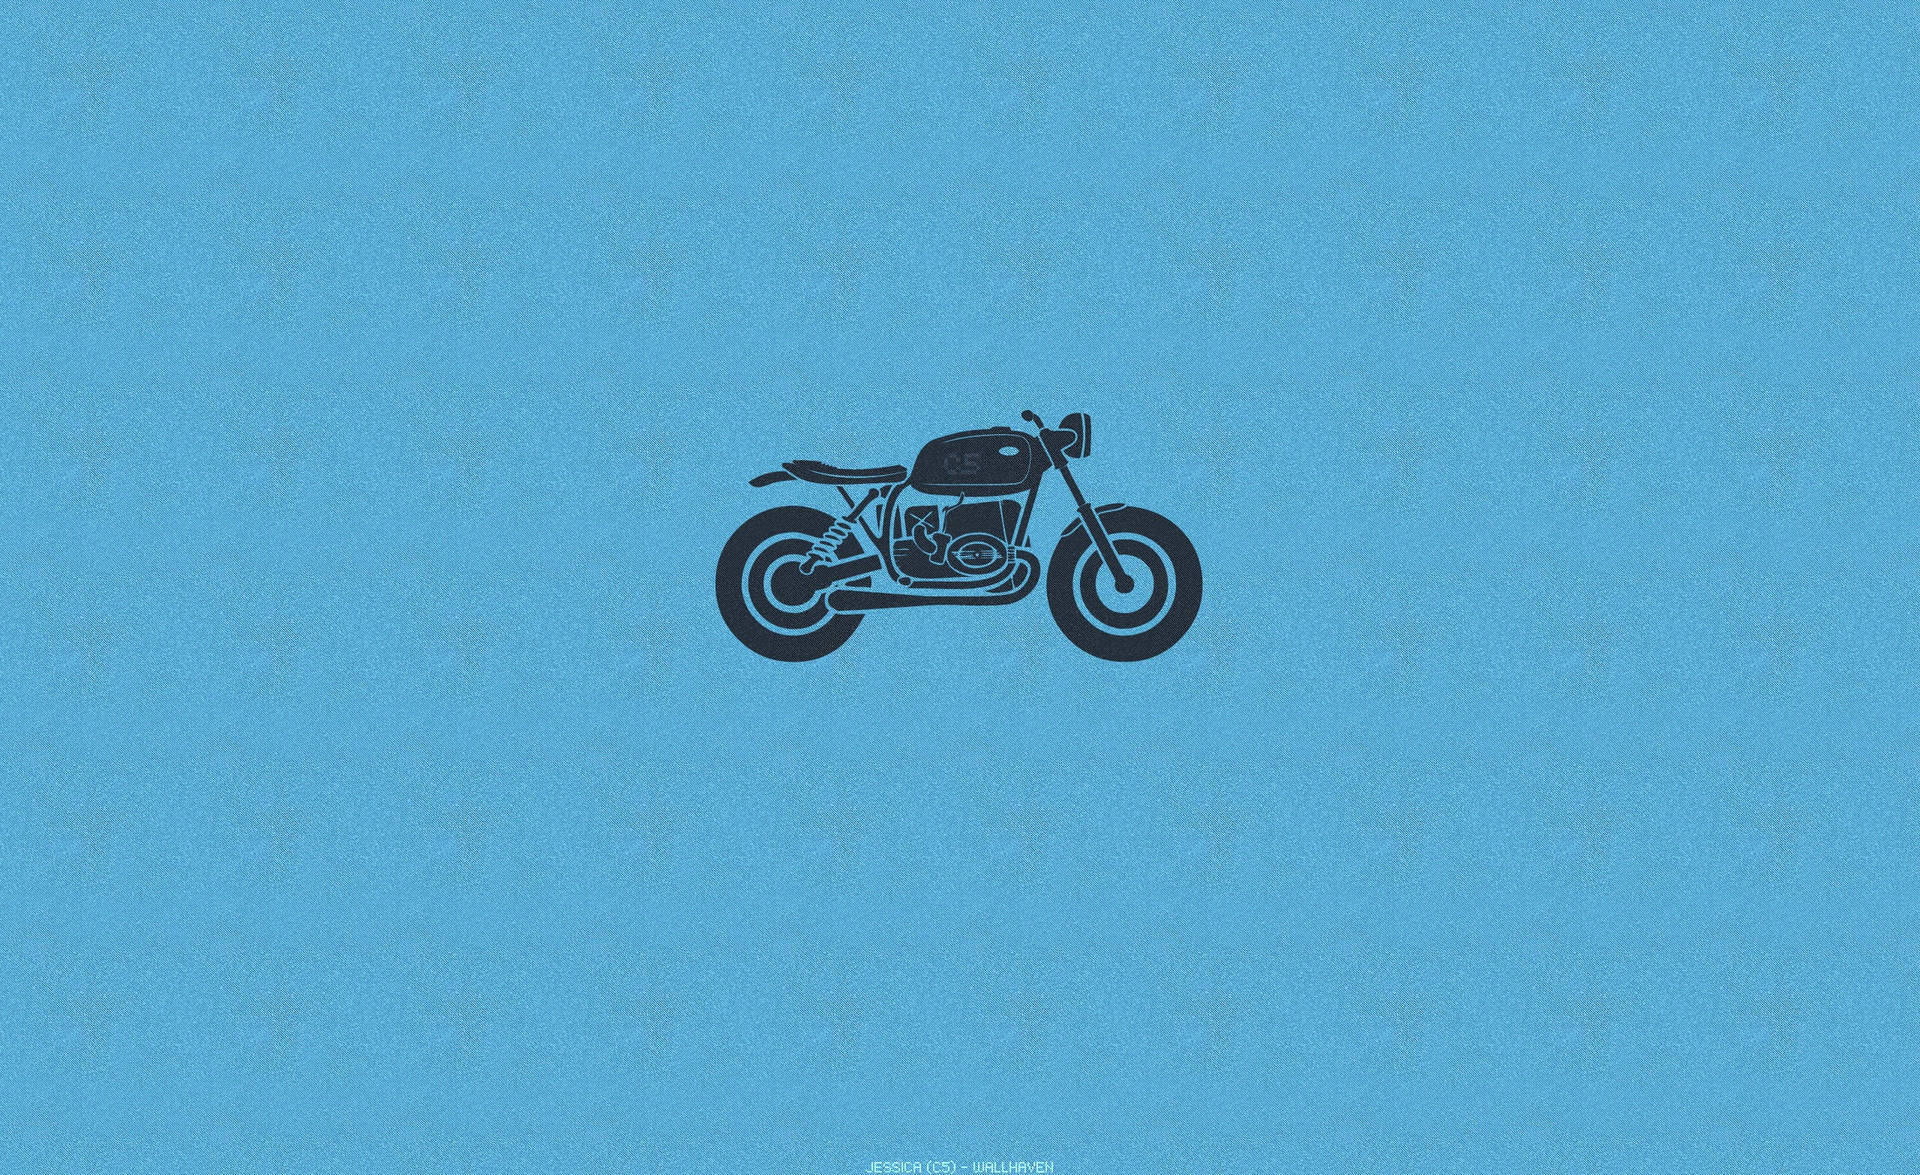 Bobber Motorcycle Minimalist Art Background